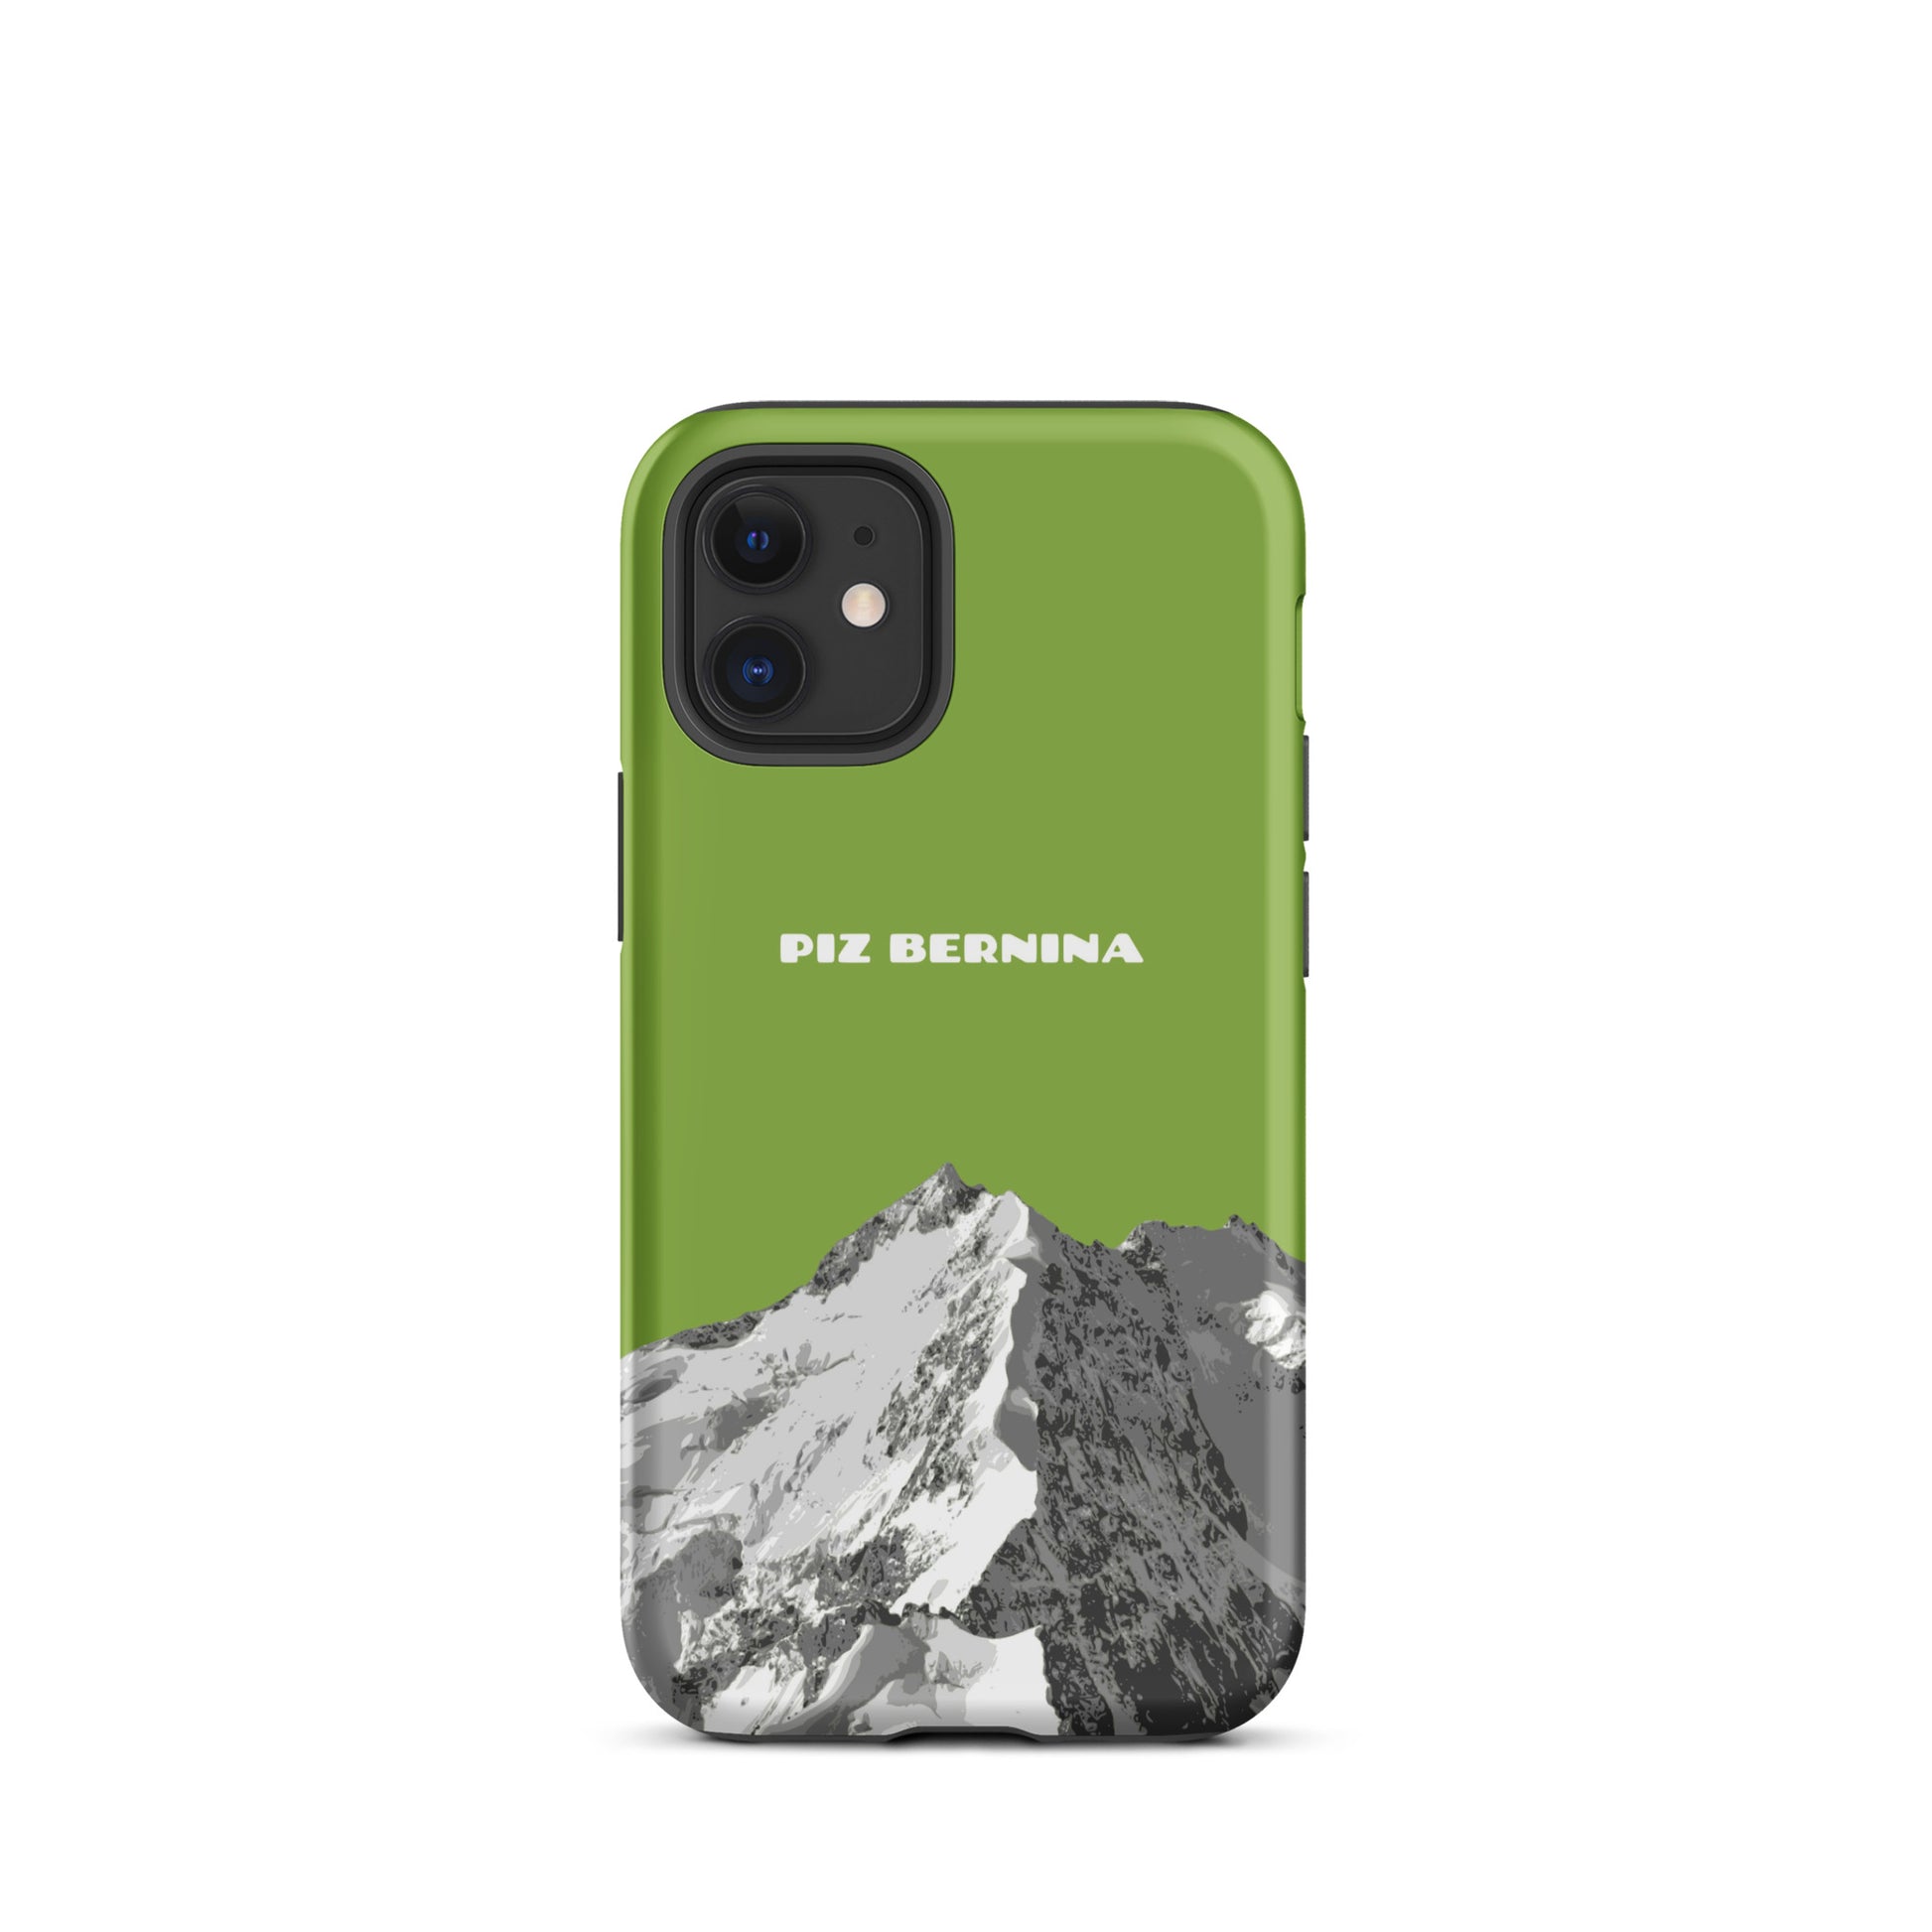 Hülle für das iPhone 12 Mini von Apple in der Farbe Gelbgrün, dass den Piz Bernina in Graubünden zeigt.